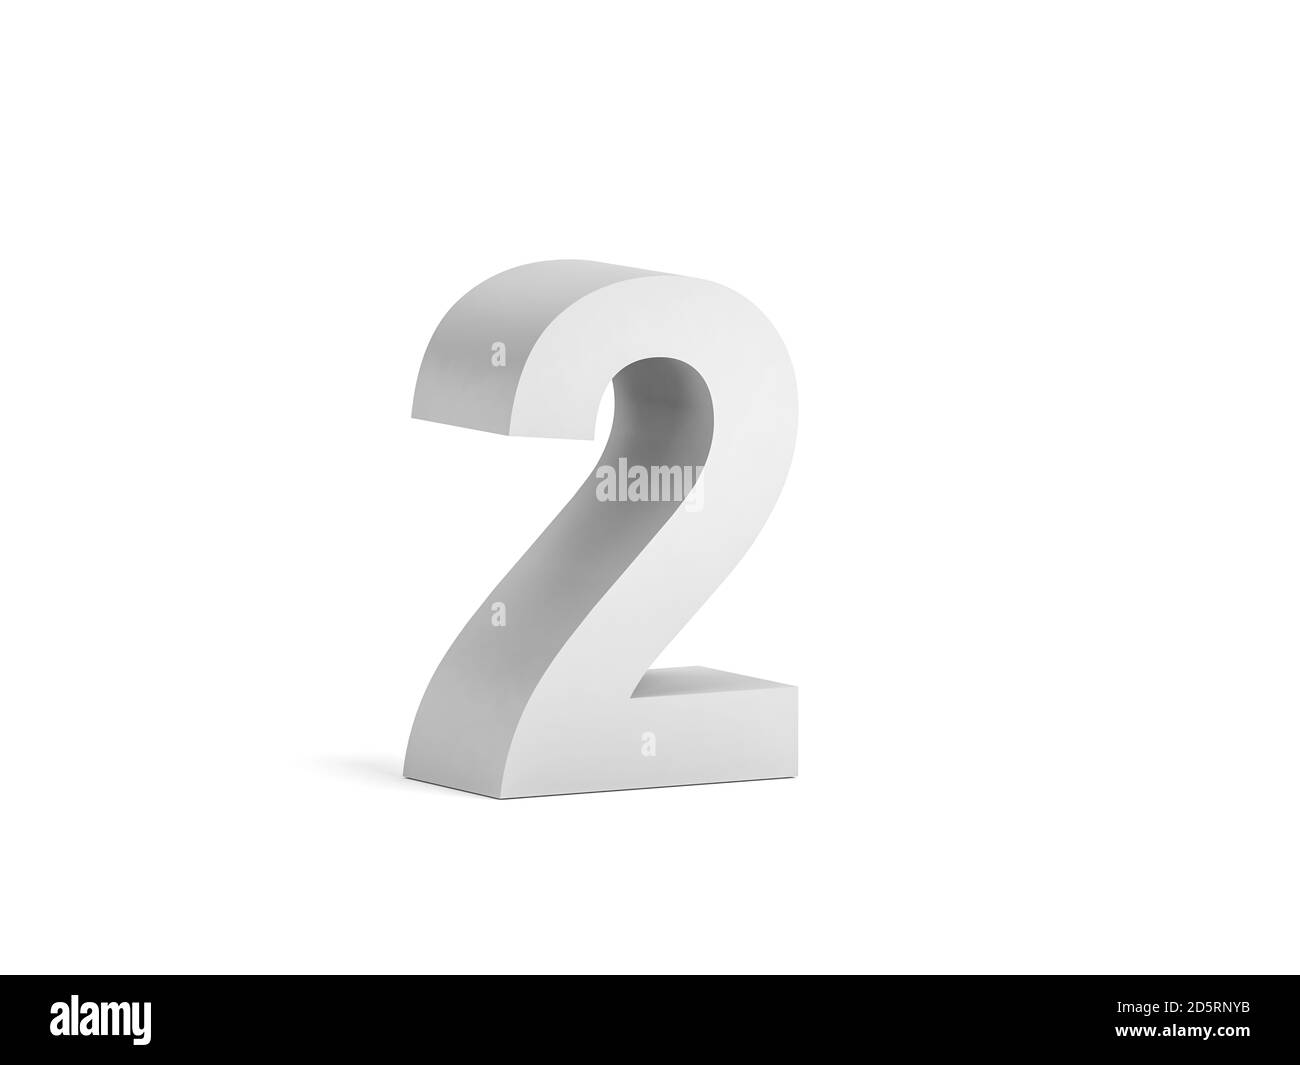 Cifra bianca in grassetto 2 isolata su sfondo bianco con ombreggiatura morbida, rappresentazione 3d Foto Stock